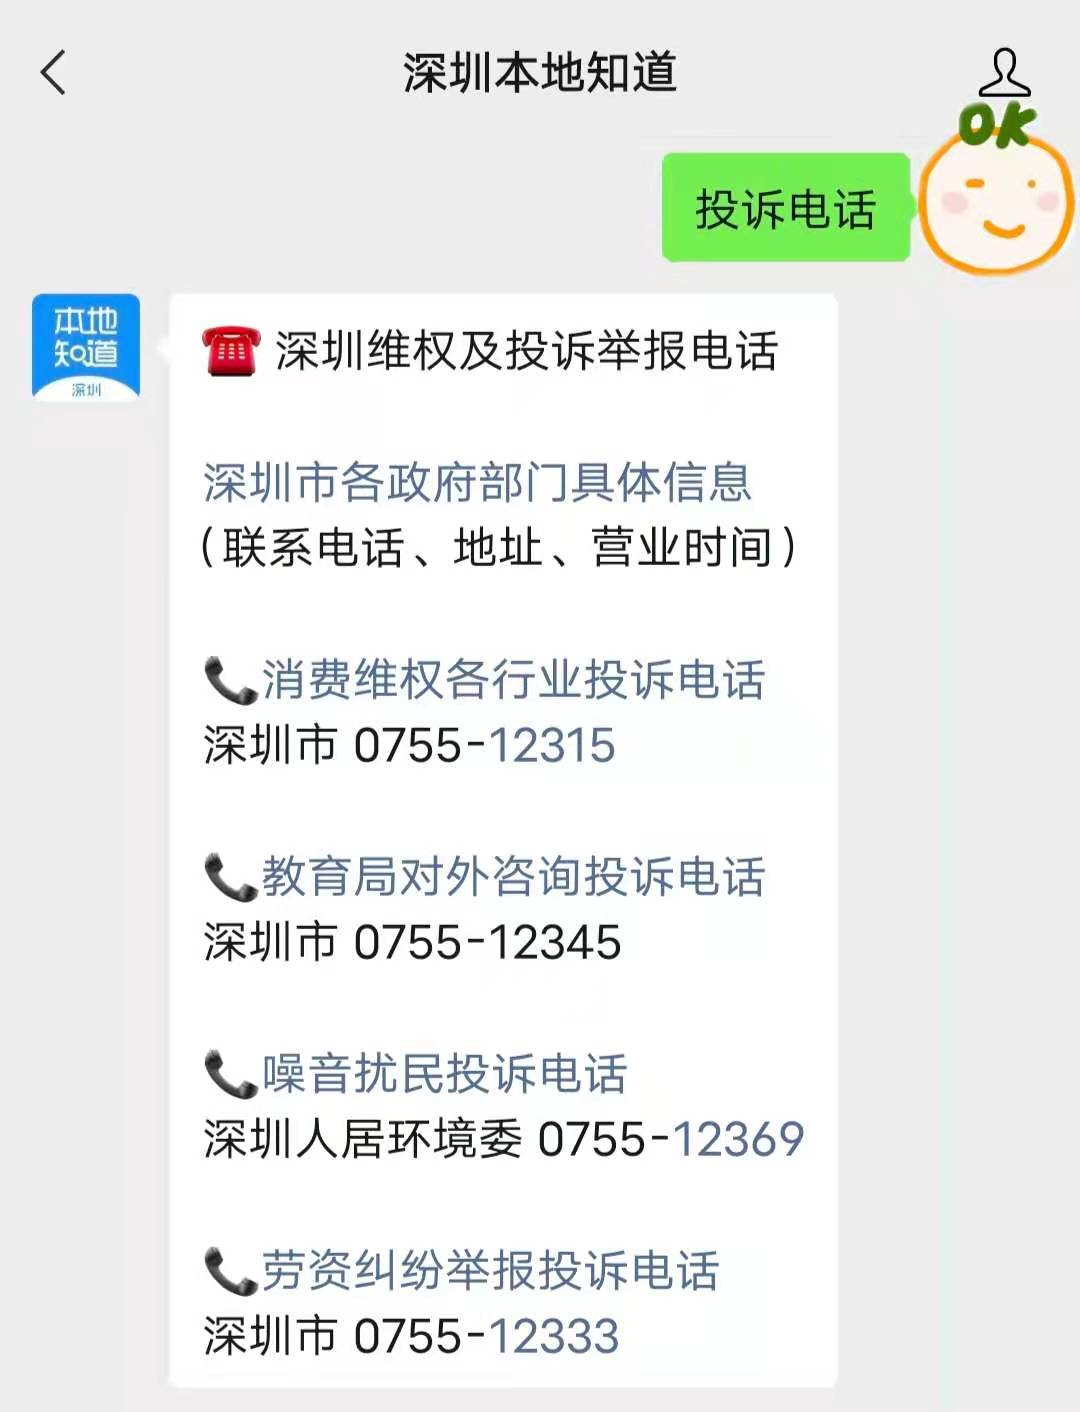 投诉飞猪旅行深圳环宇国际旅行社无法取消订单不可退款 投诉直通车_华声在线